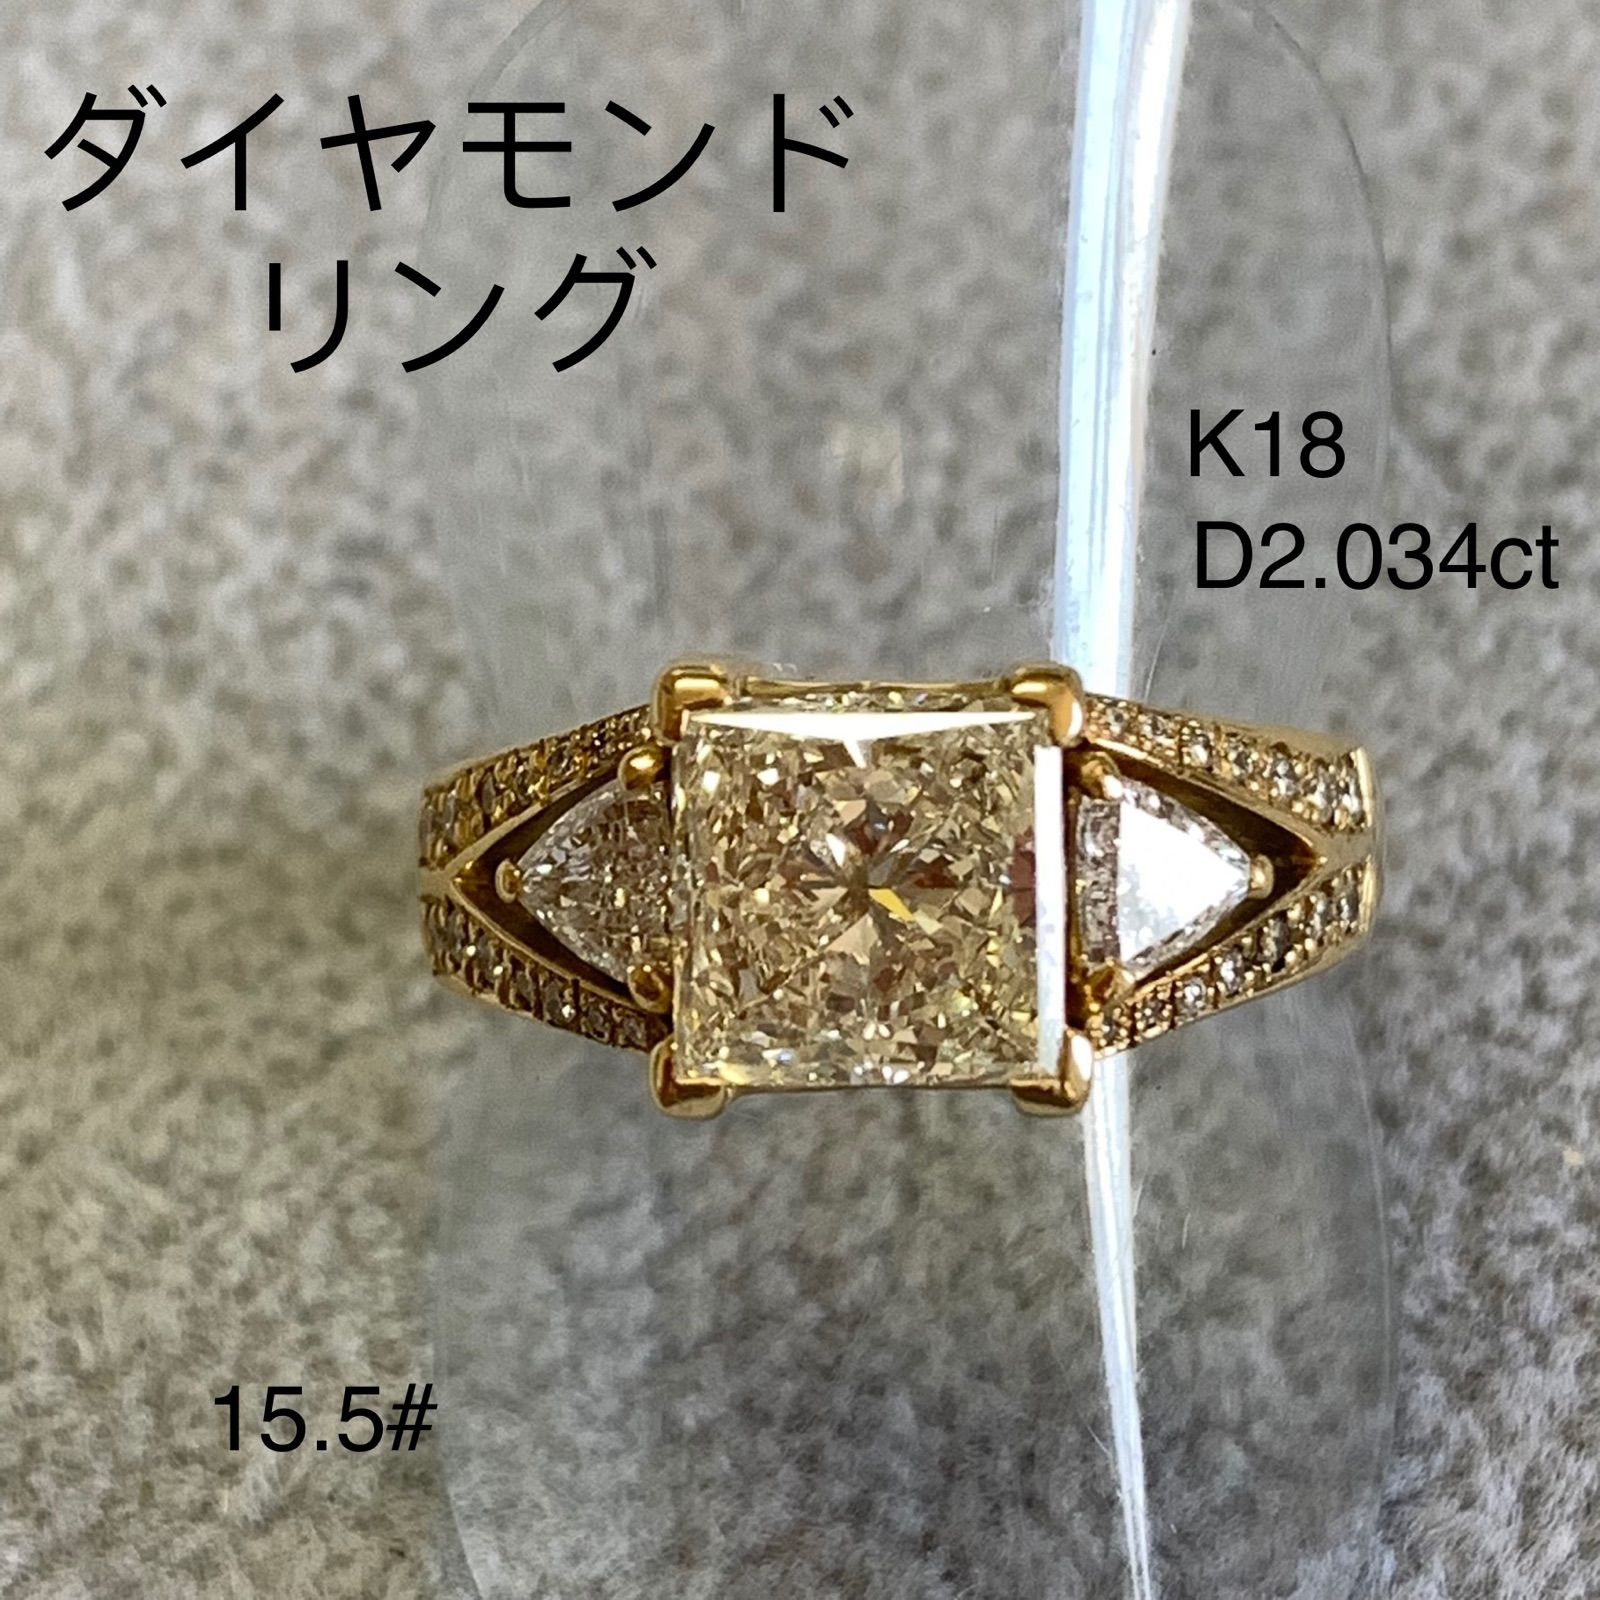 ダイヤモンド リング K18 15.5号 - KTVTG - メルカリ